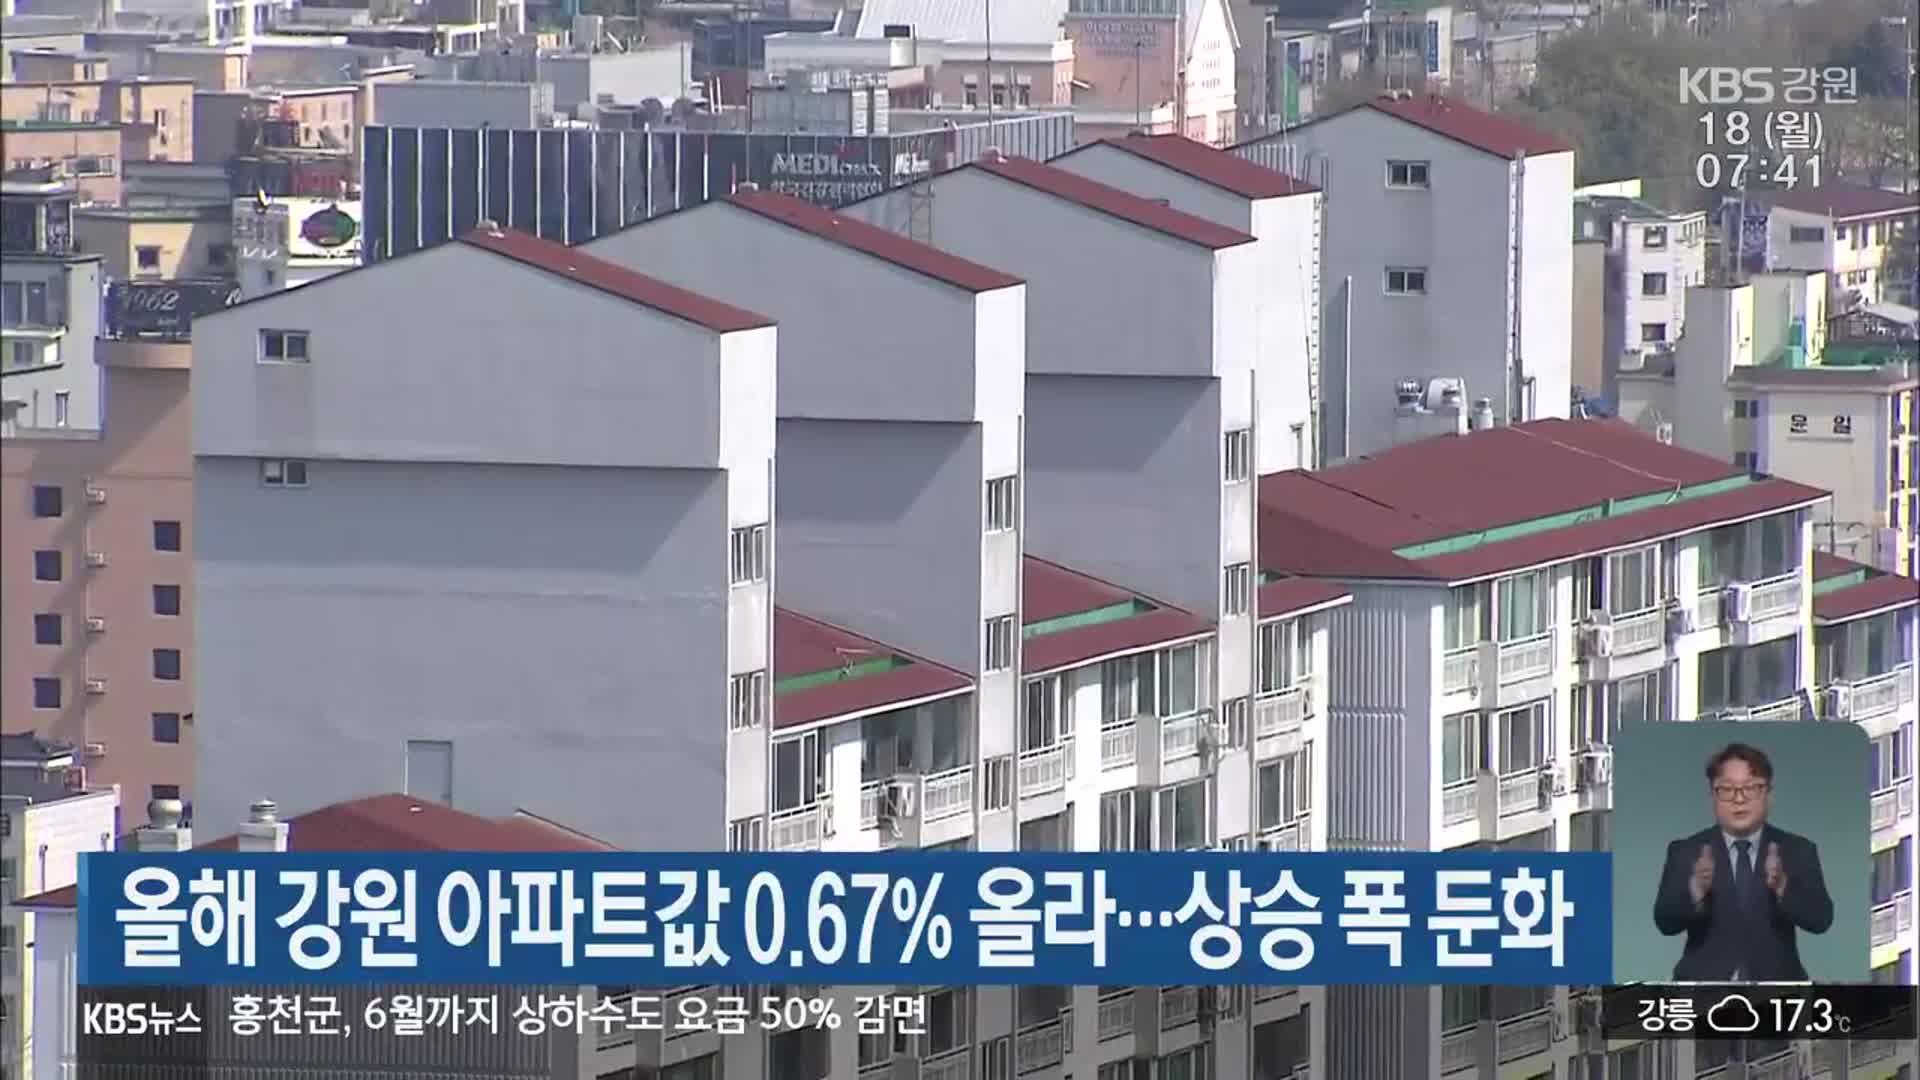 올해 강원 아파트값 0.67% 올라…상승 폭 둔화